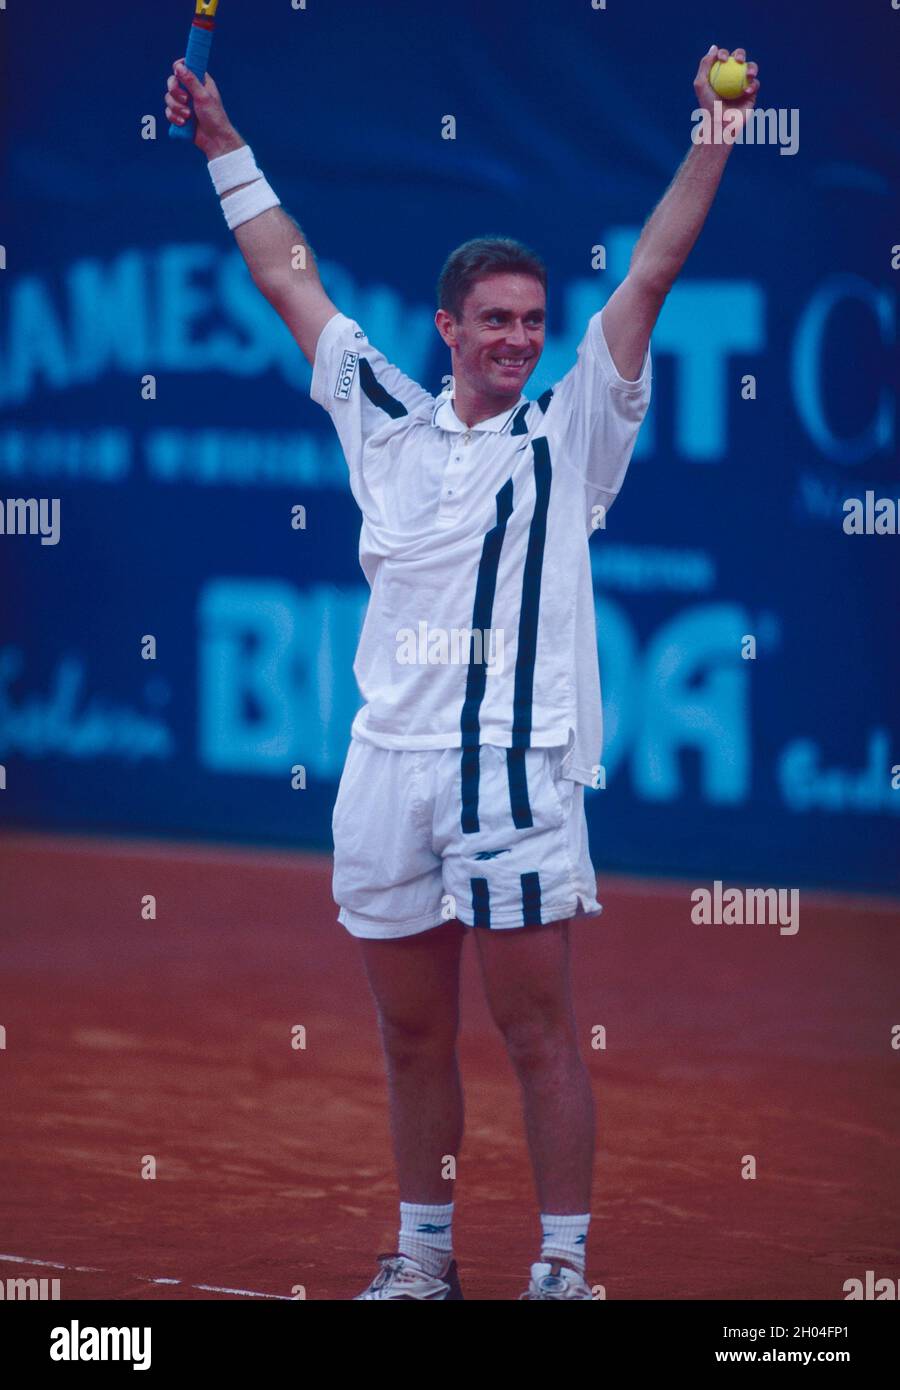 Joueur de tennis espagnol Felix Mantilla, années 2000 Banque D'Images